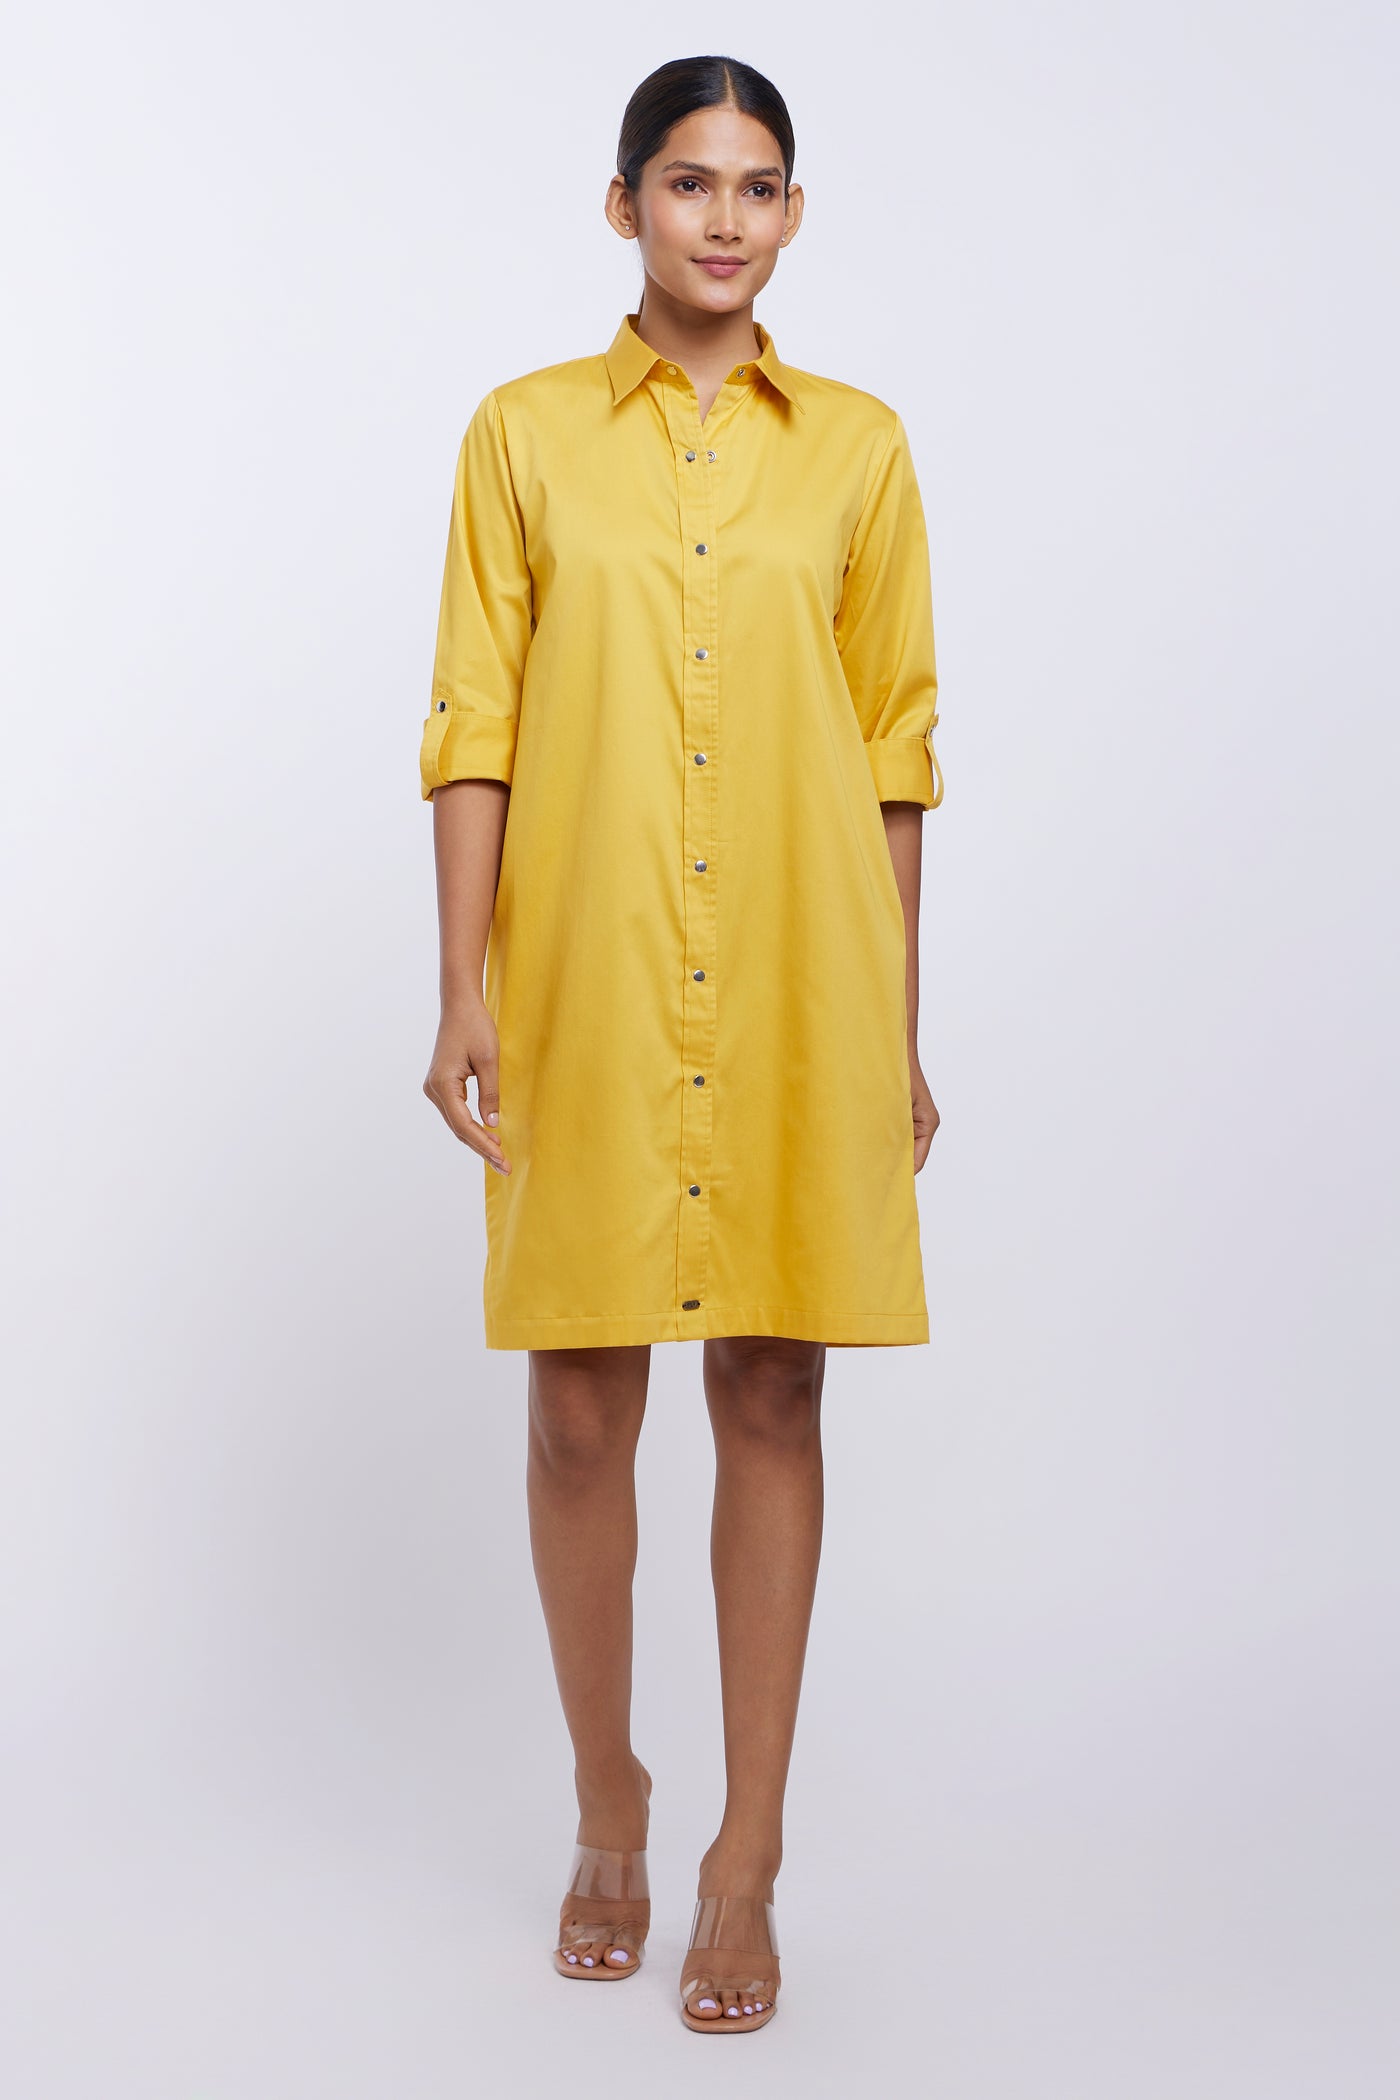 Canary Yellow Shirt Dress